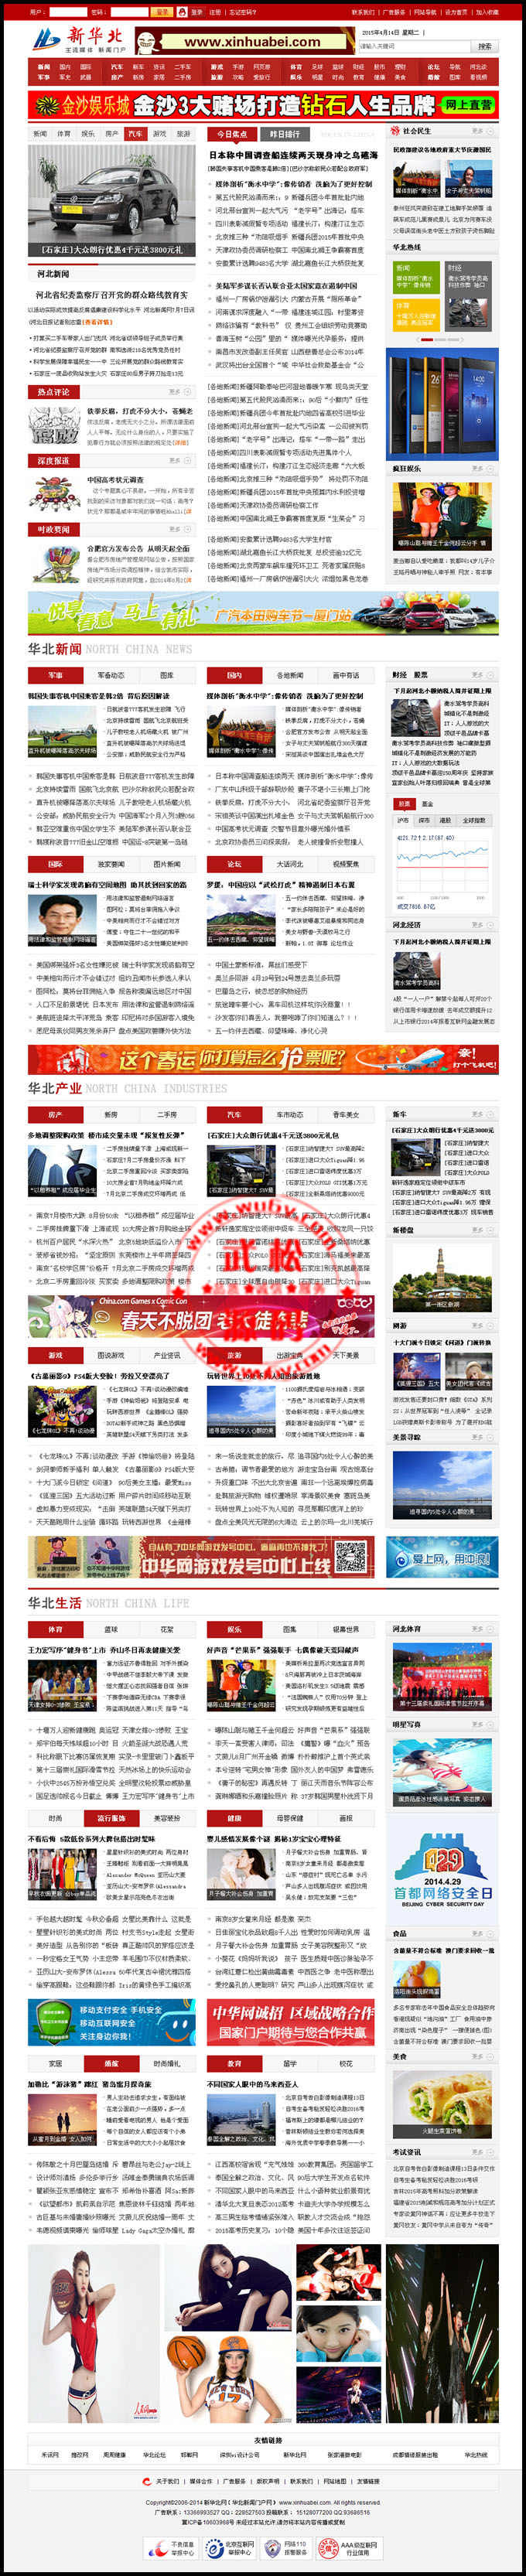 最新版华北地方新闻门户整站源码-红色大气风格适合做新闻站点-帝国cms内核收录多多OD1072